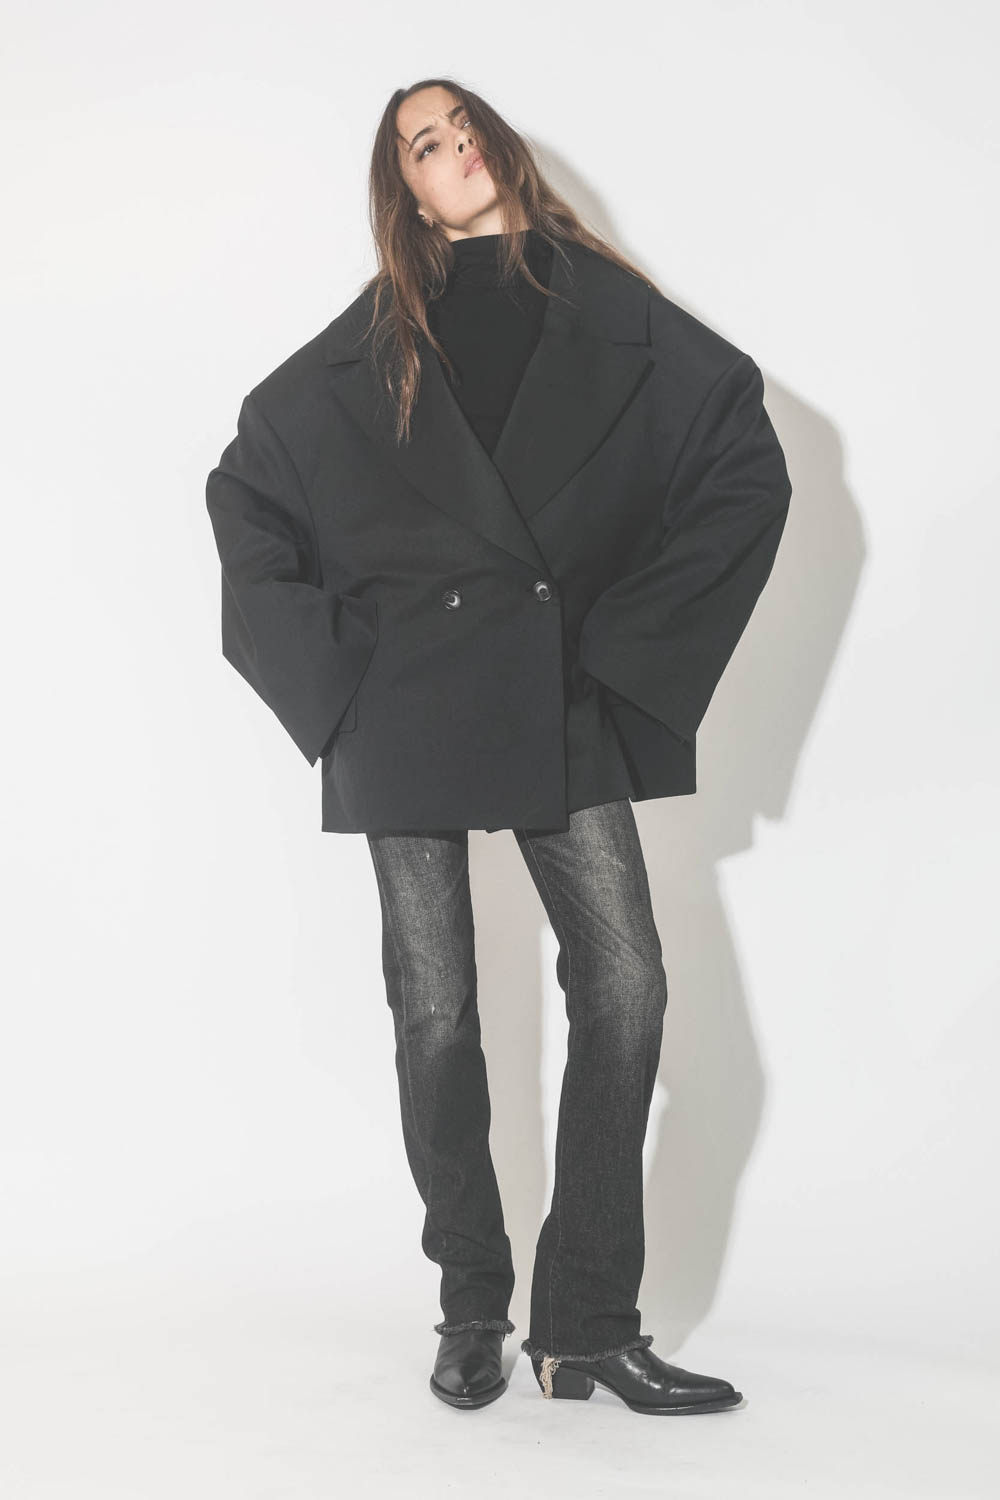 Veste oversize noire Kristeva Vautrait. Porté avec un jeans noir et des santiags.